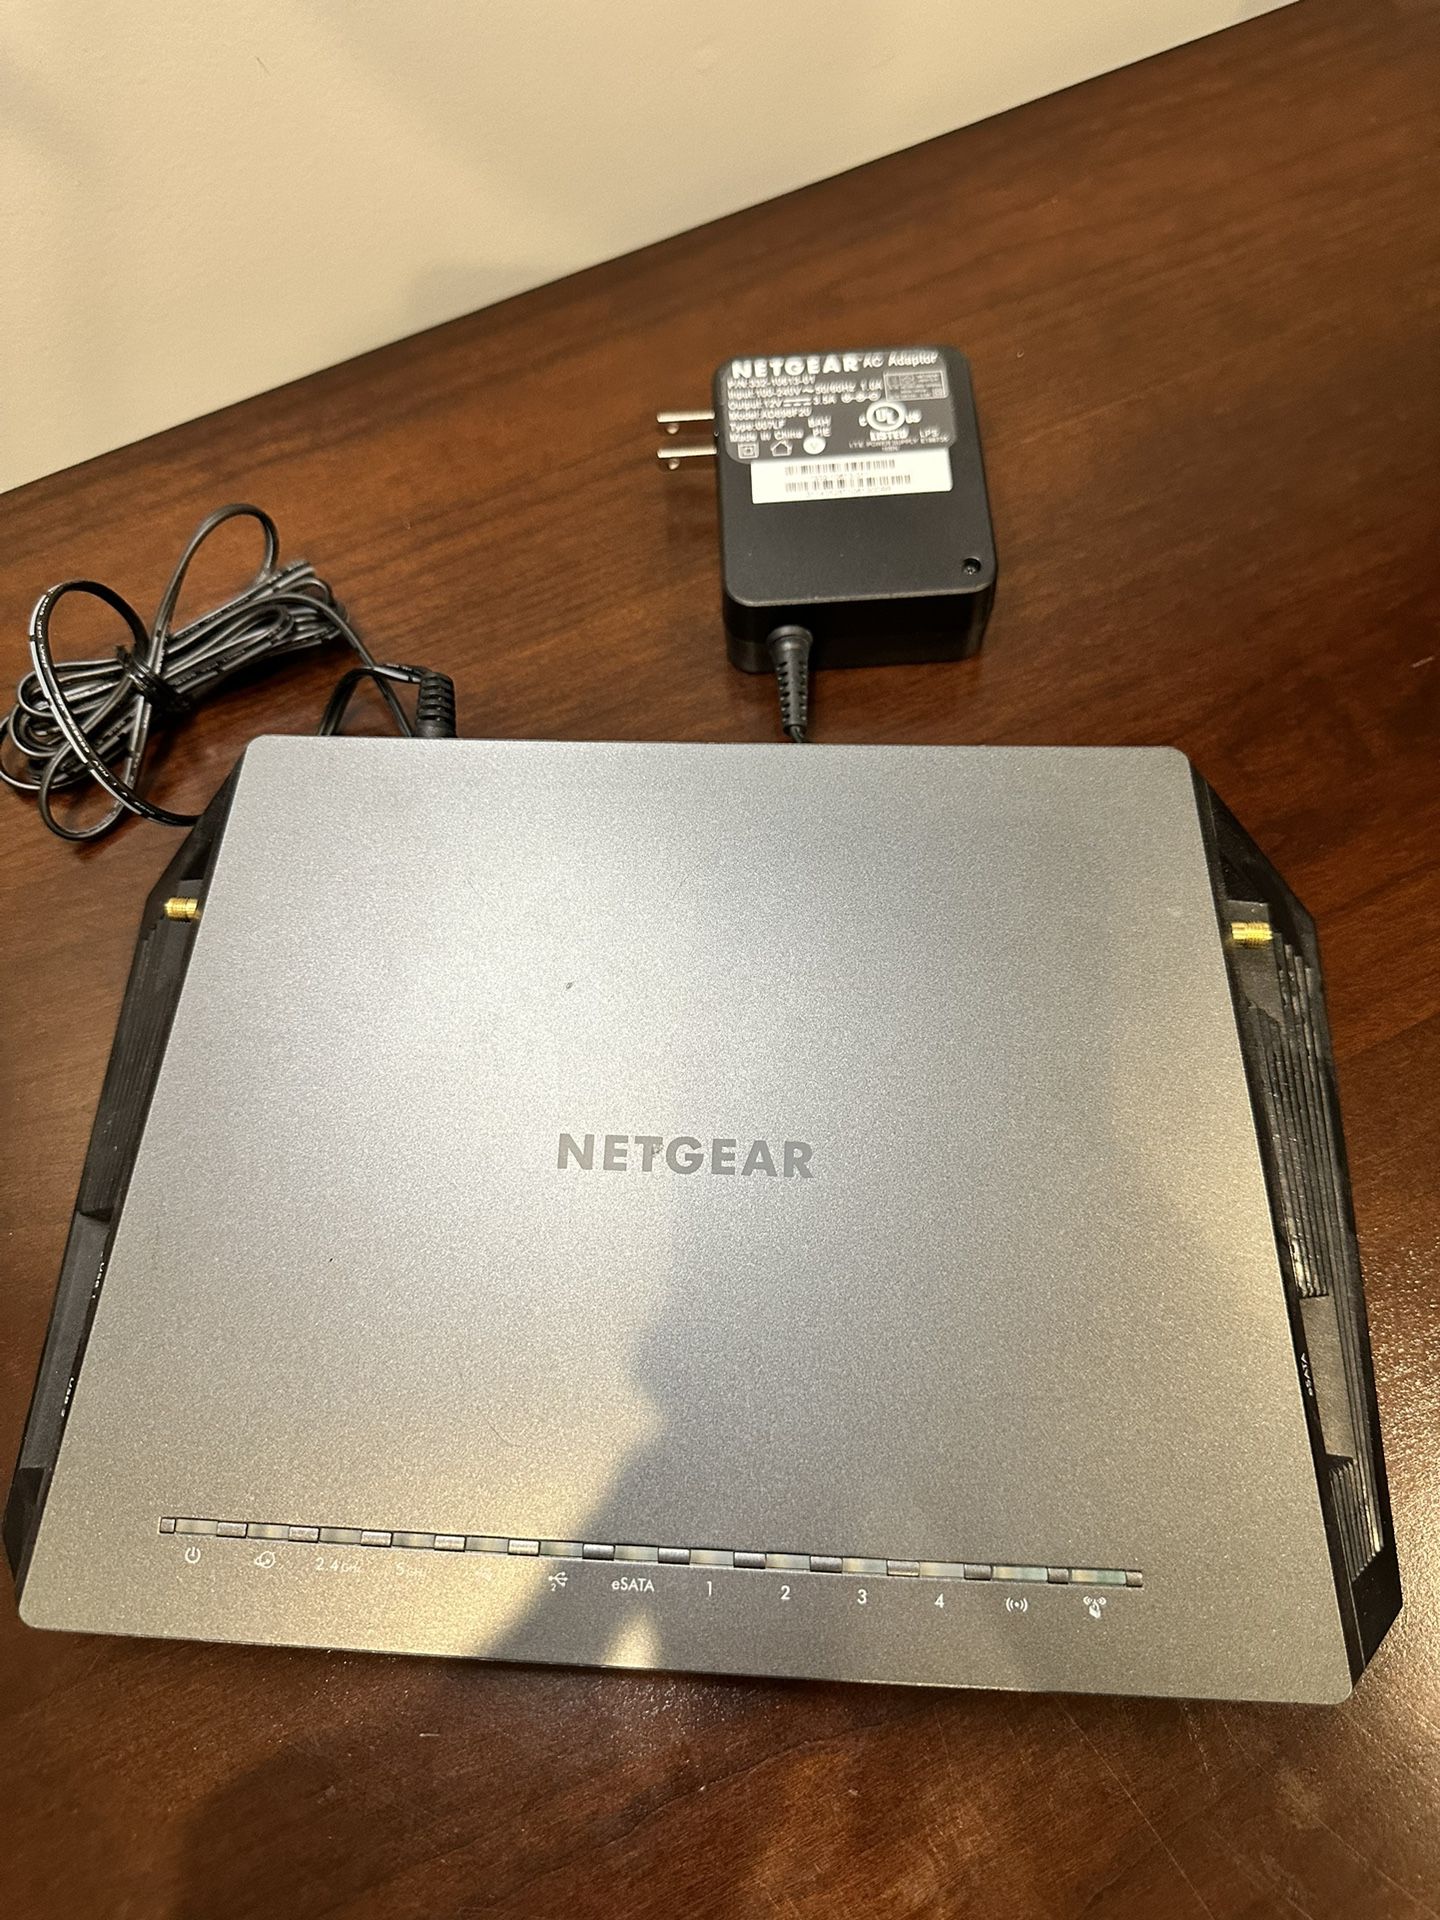 NETGEAR R7500 Nighthawk X4 Dual Band WiFi Router